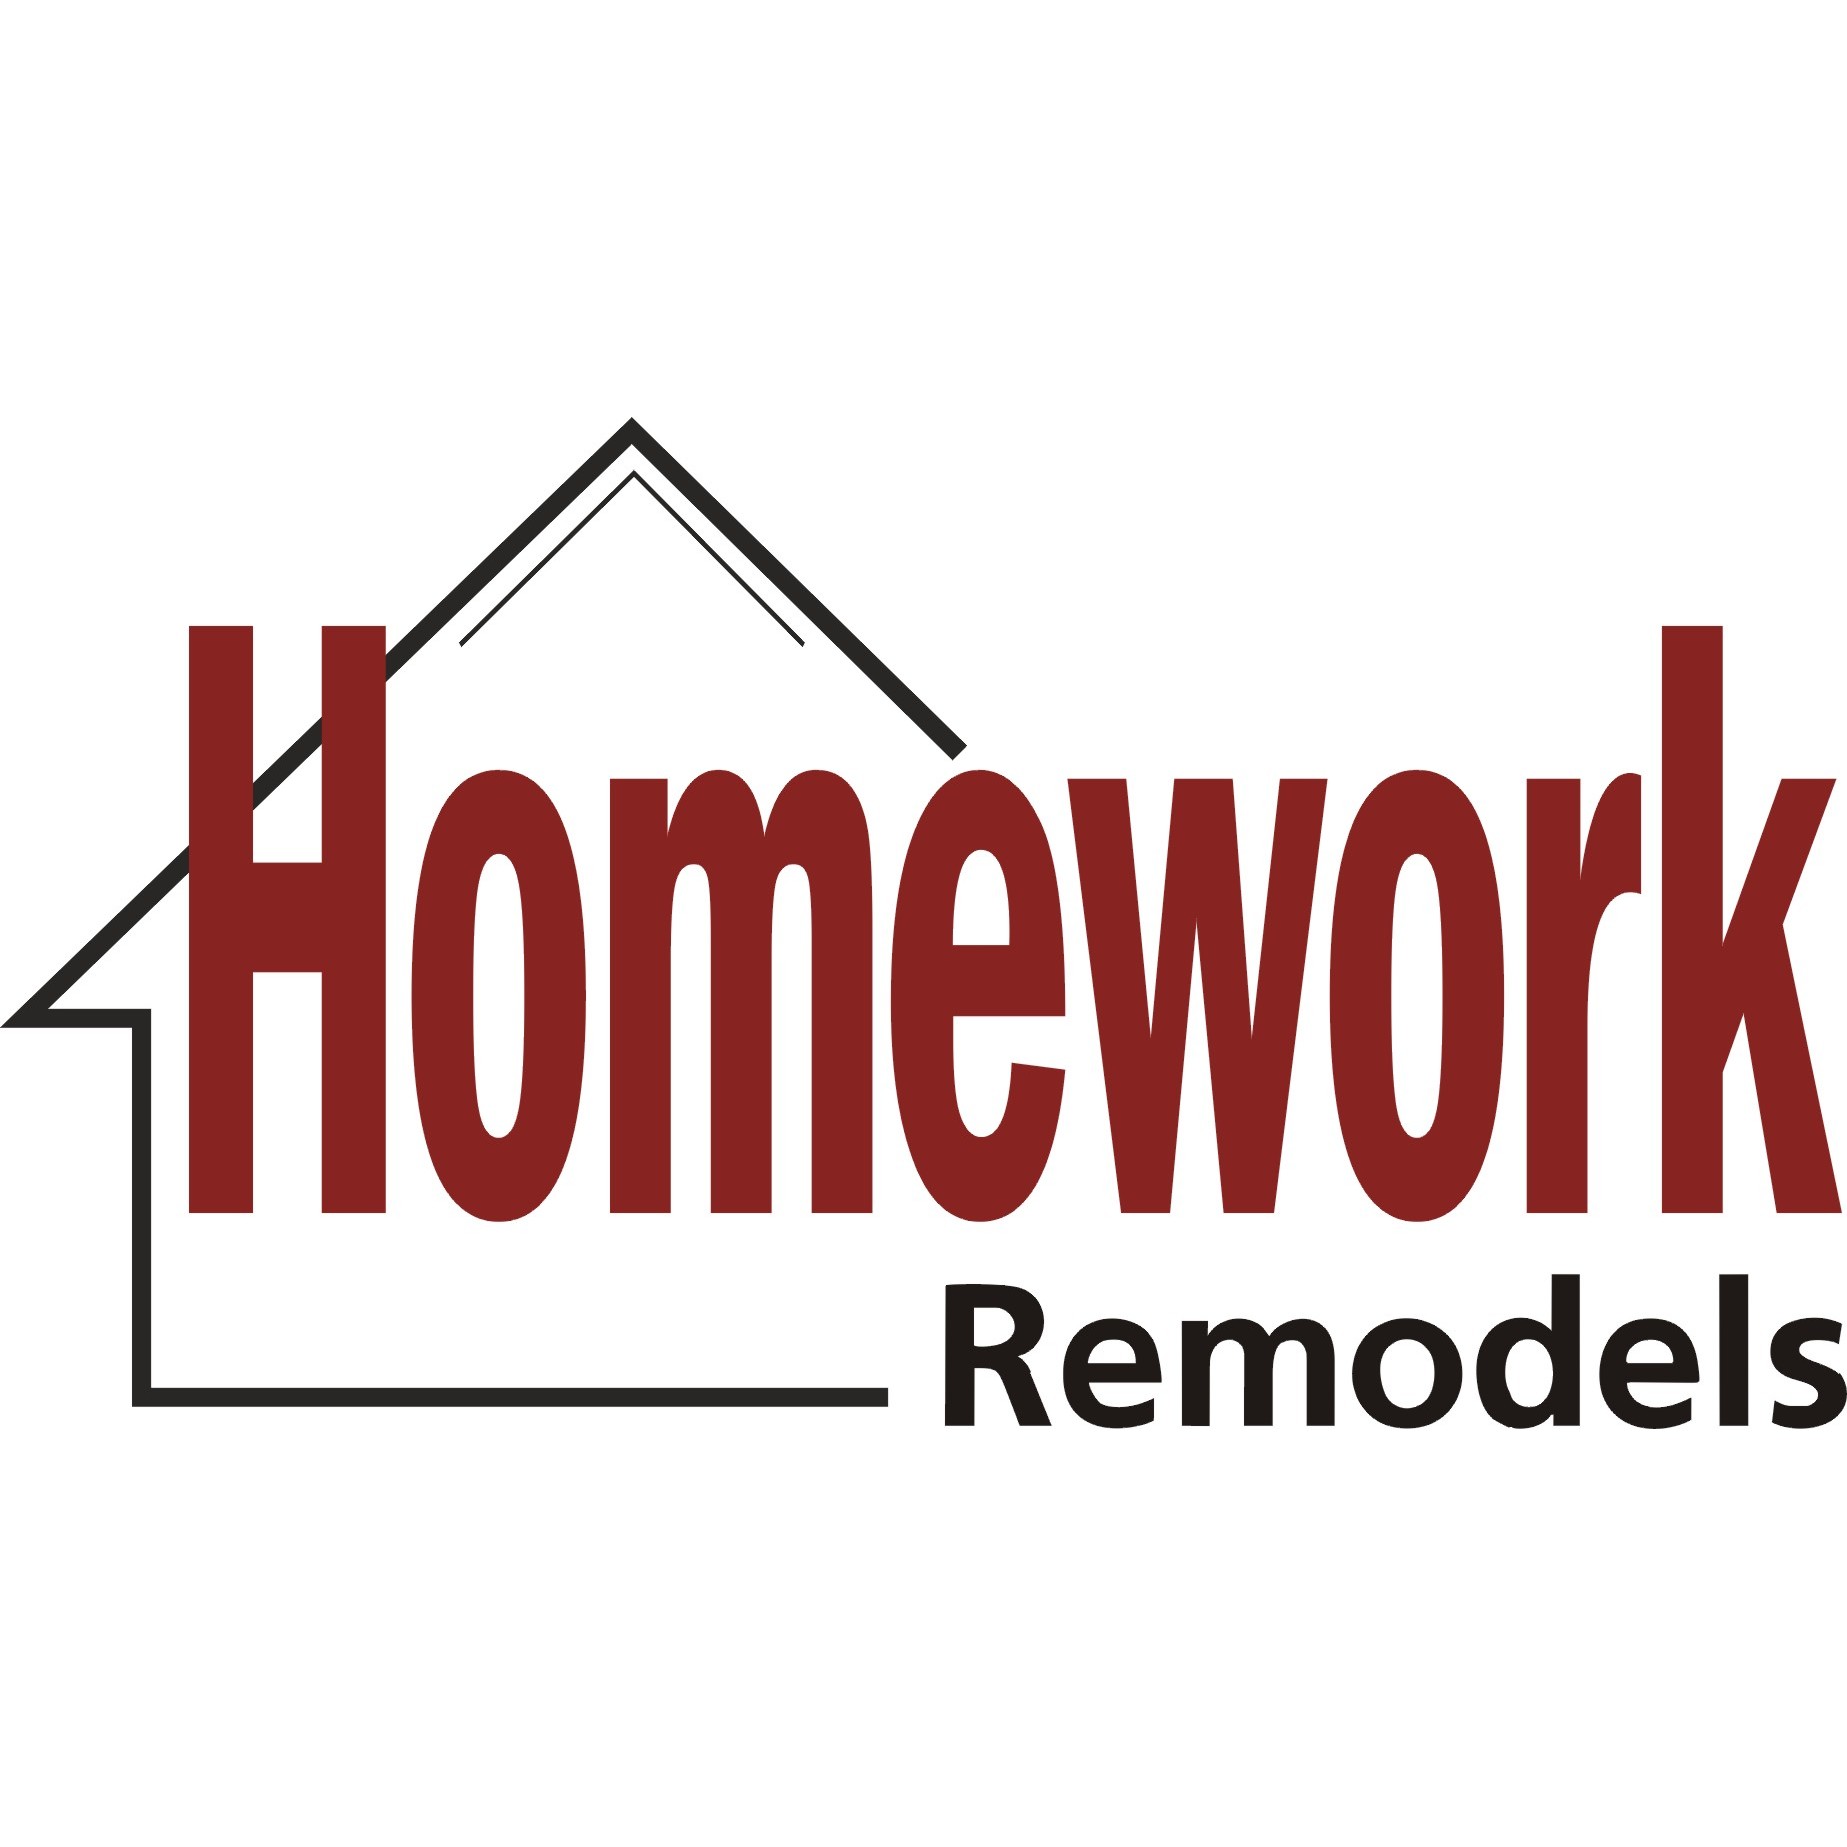 Homework Remodels Logo